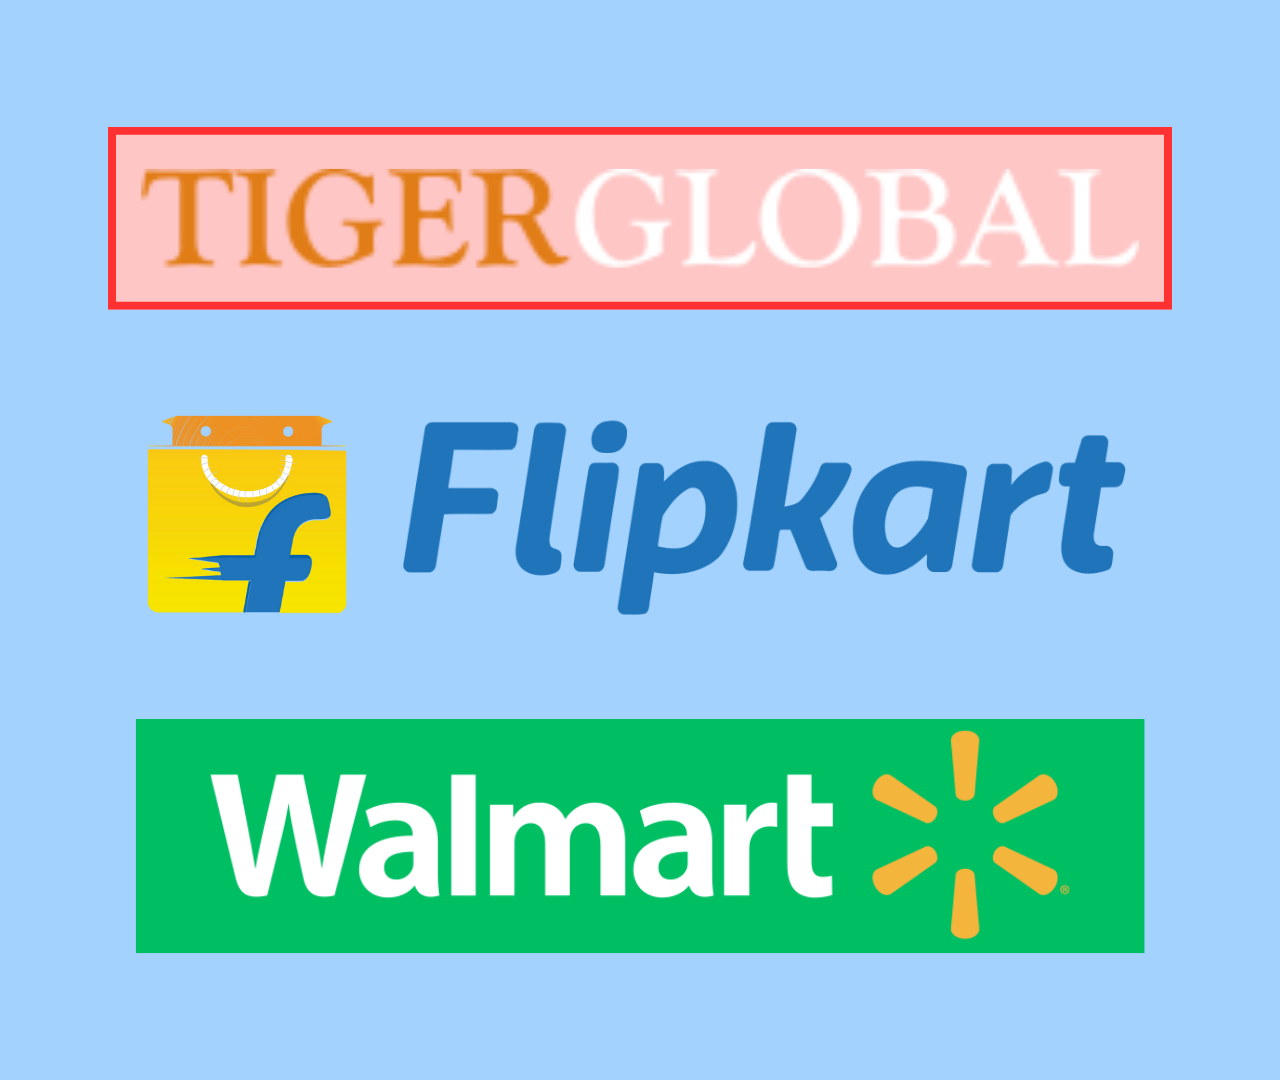 Tiger Global Exit Flipkart